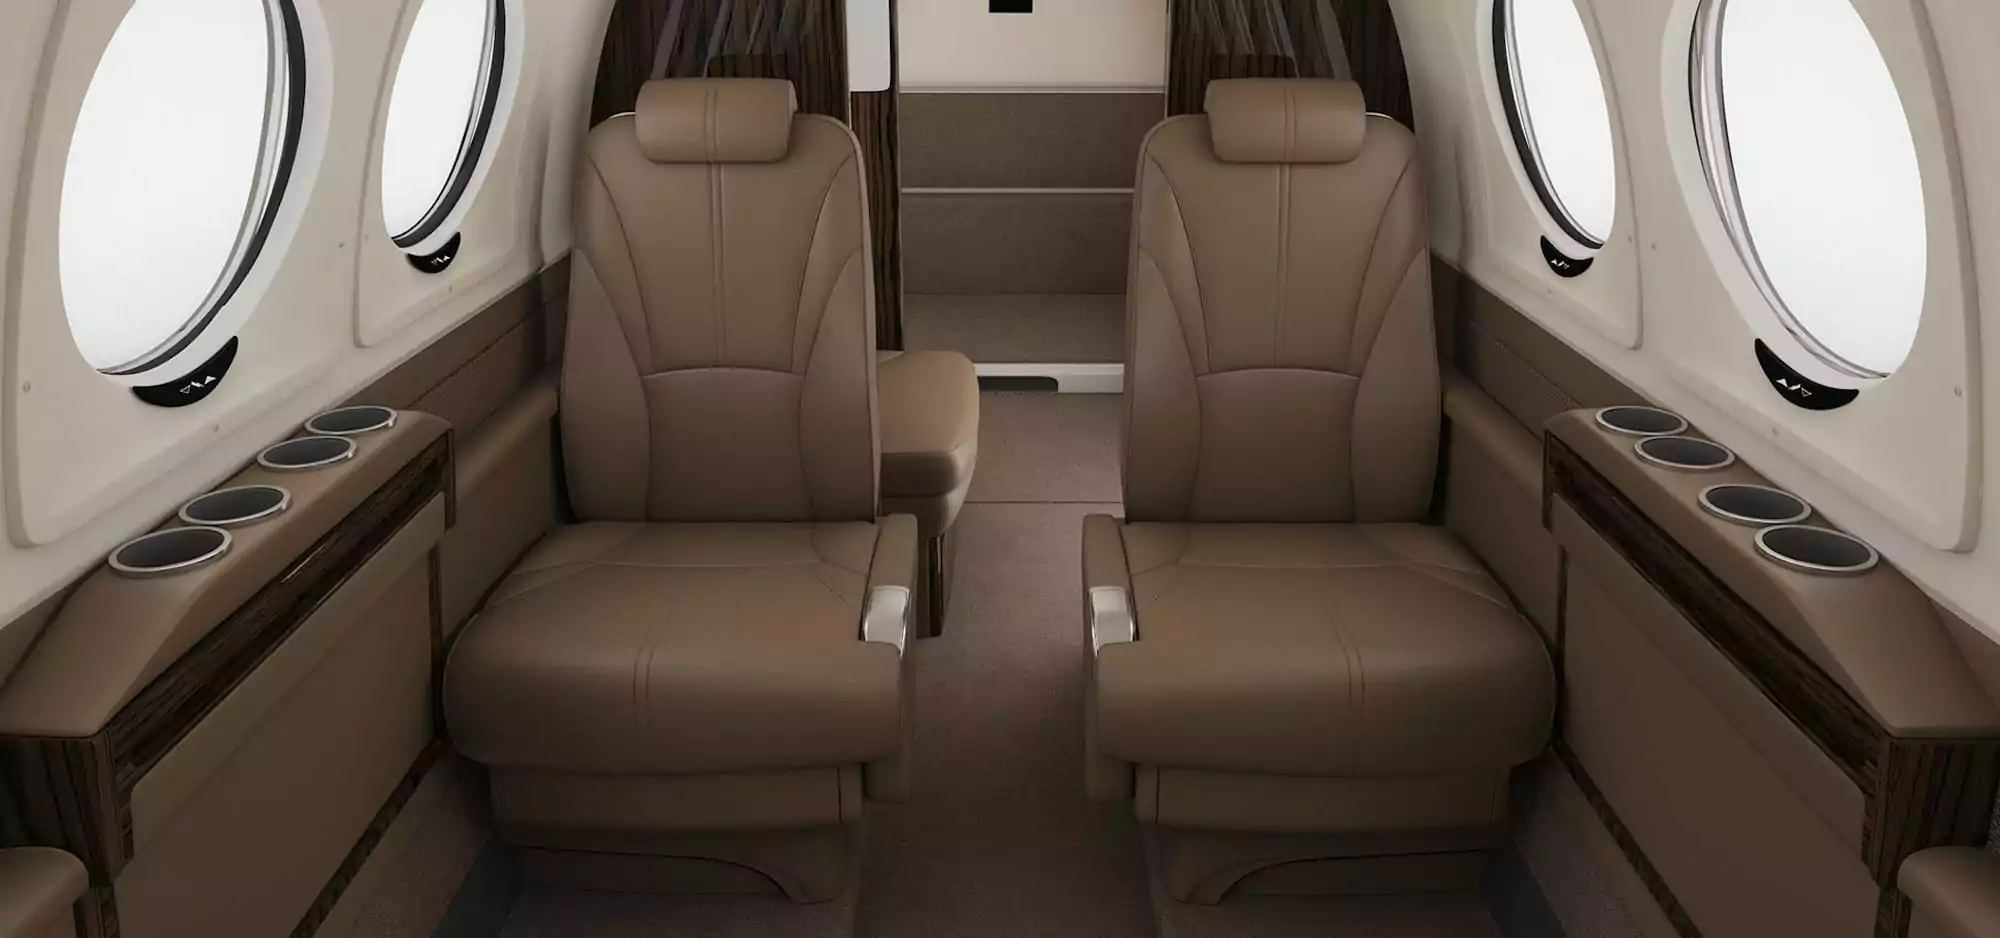 King Air 260 interior